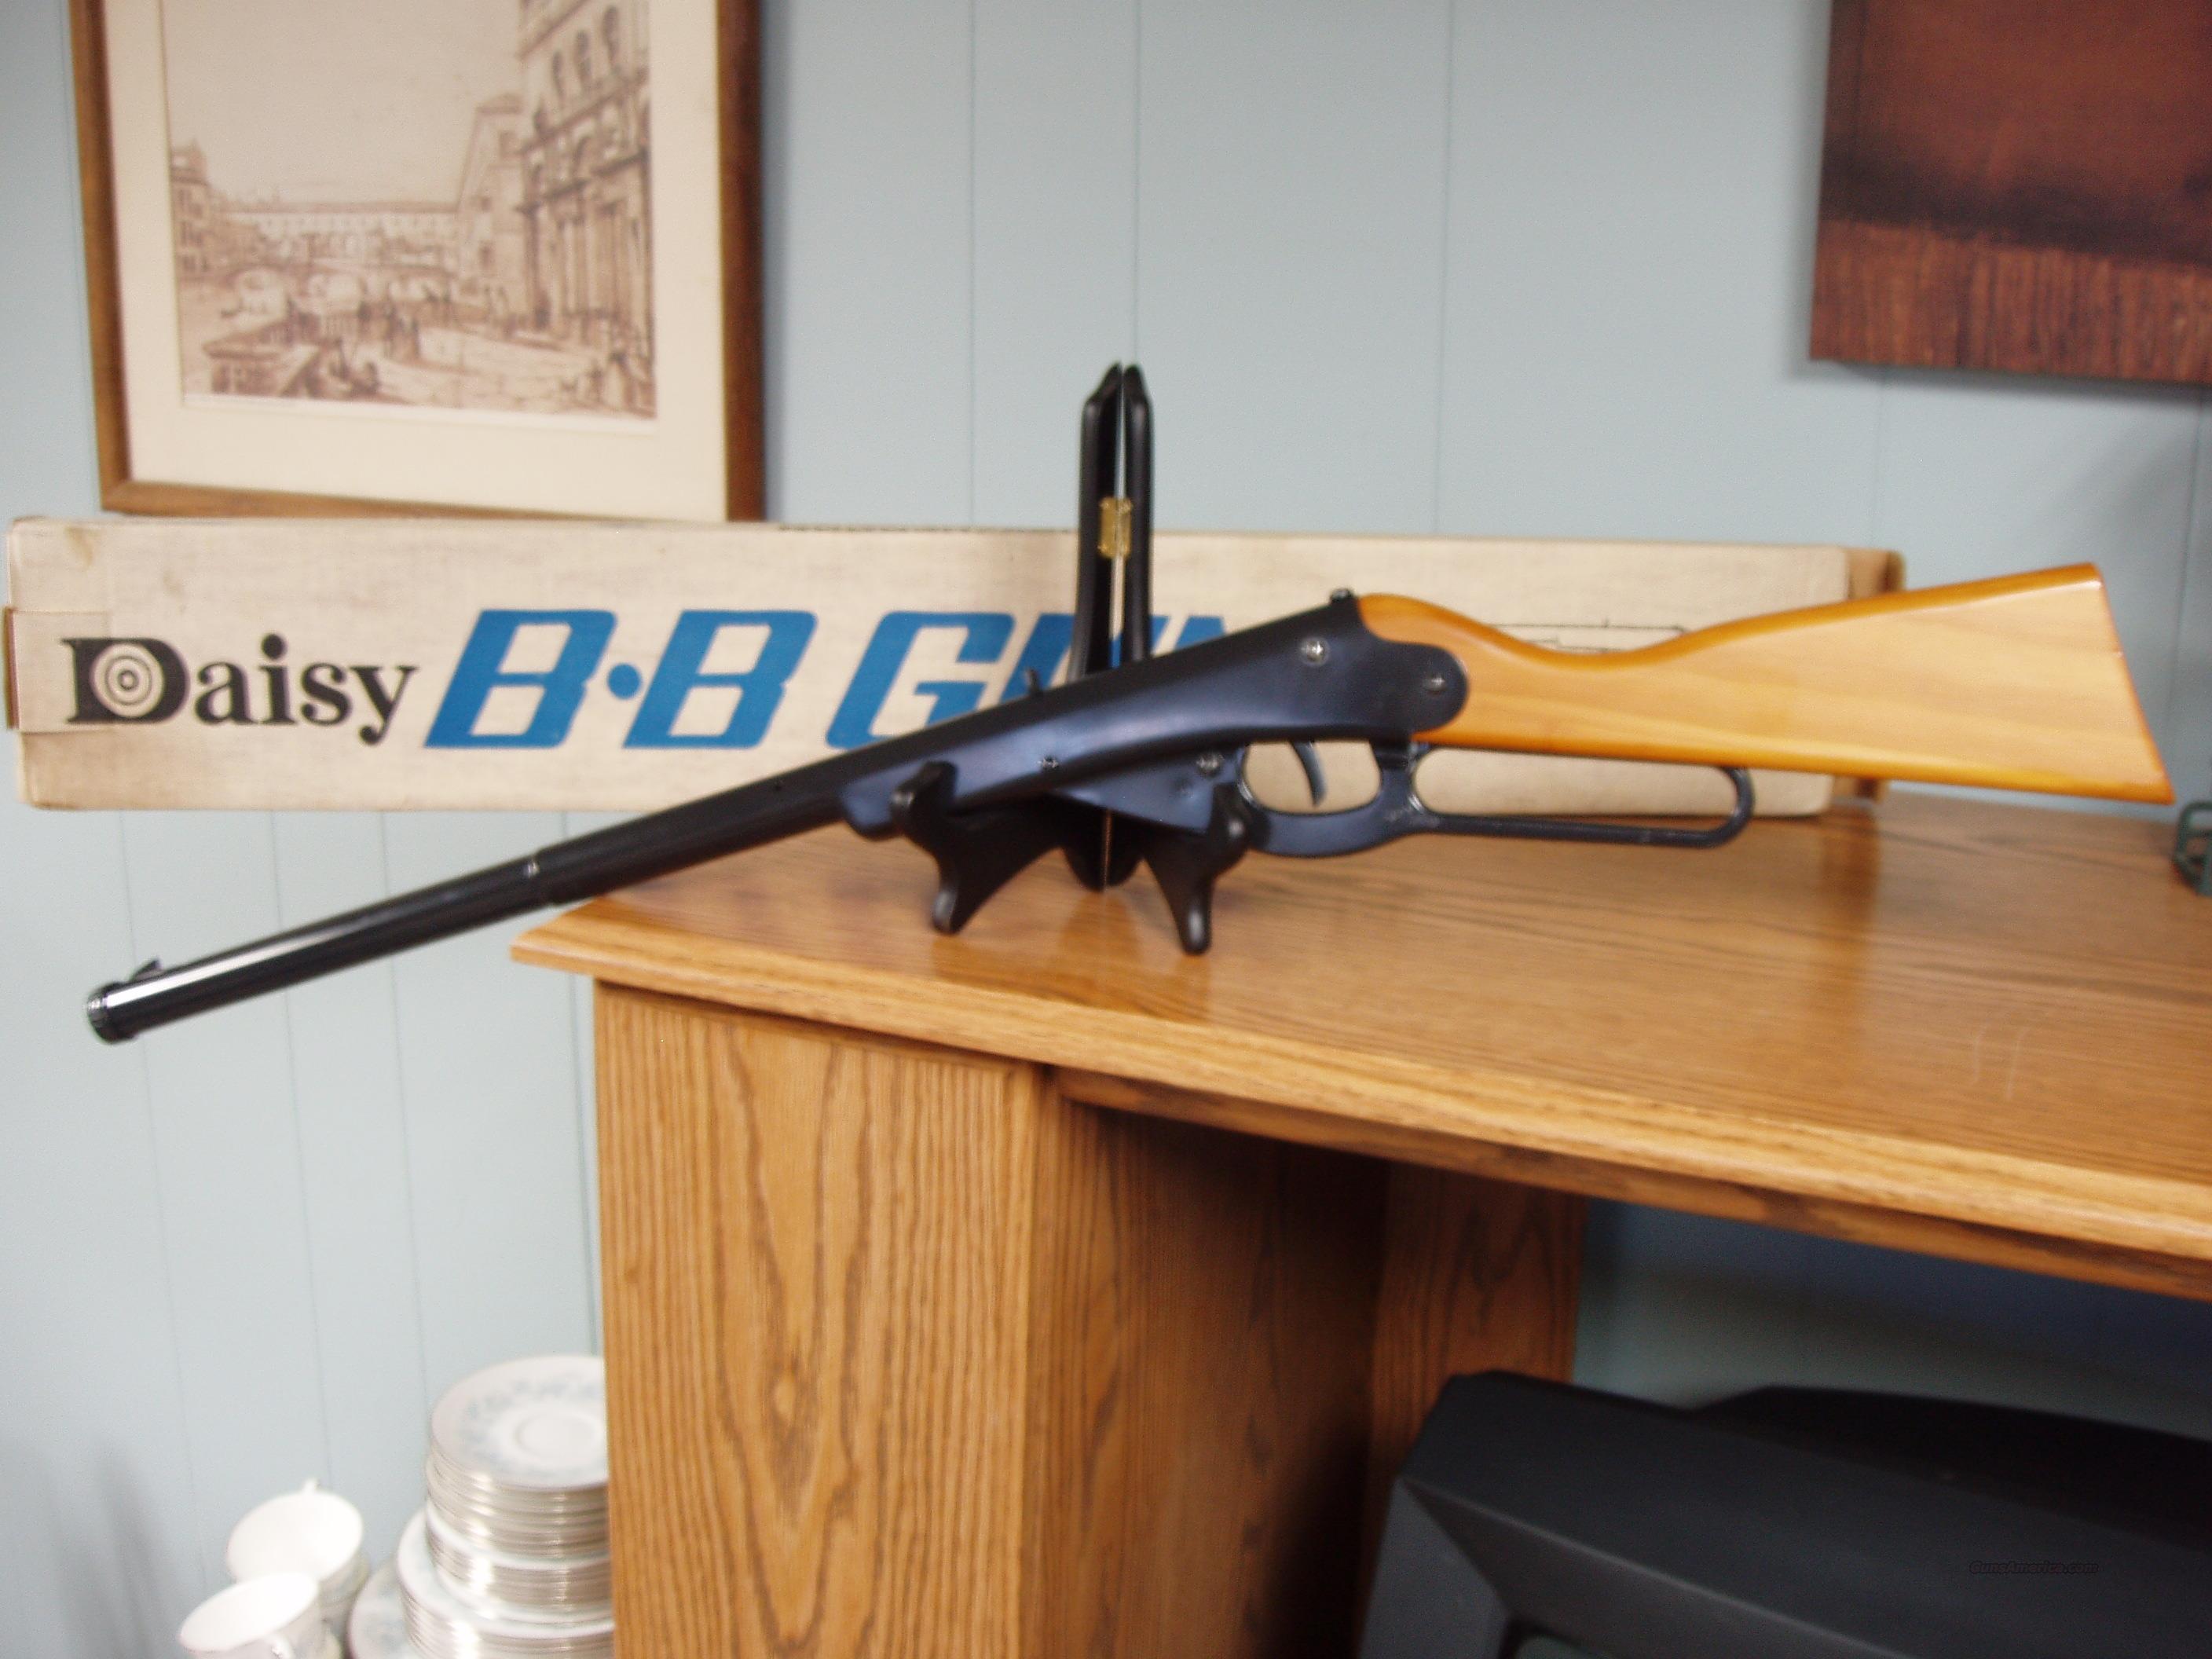 Daisy Heddon Bb Gun Model 102 The Cub For Sale